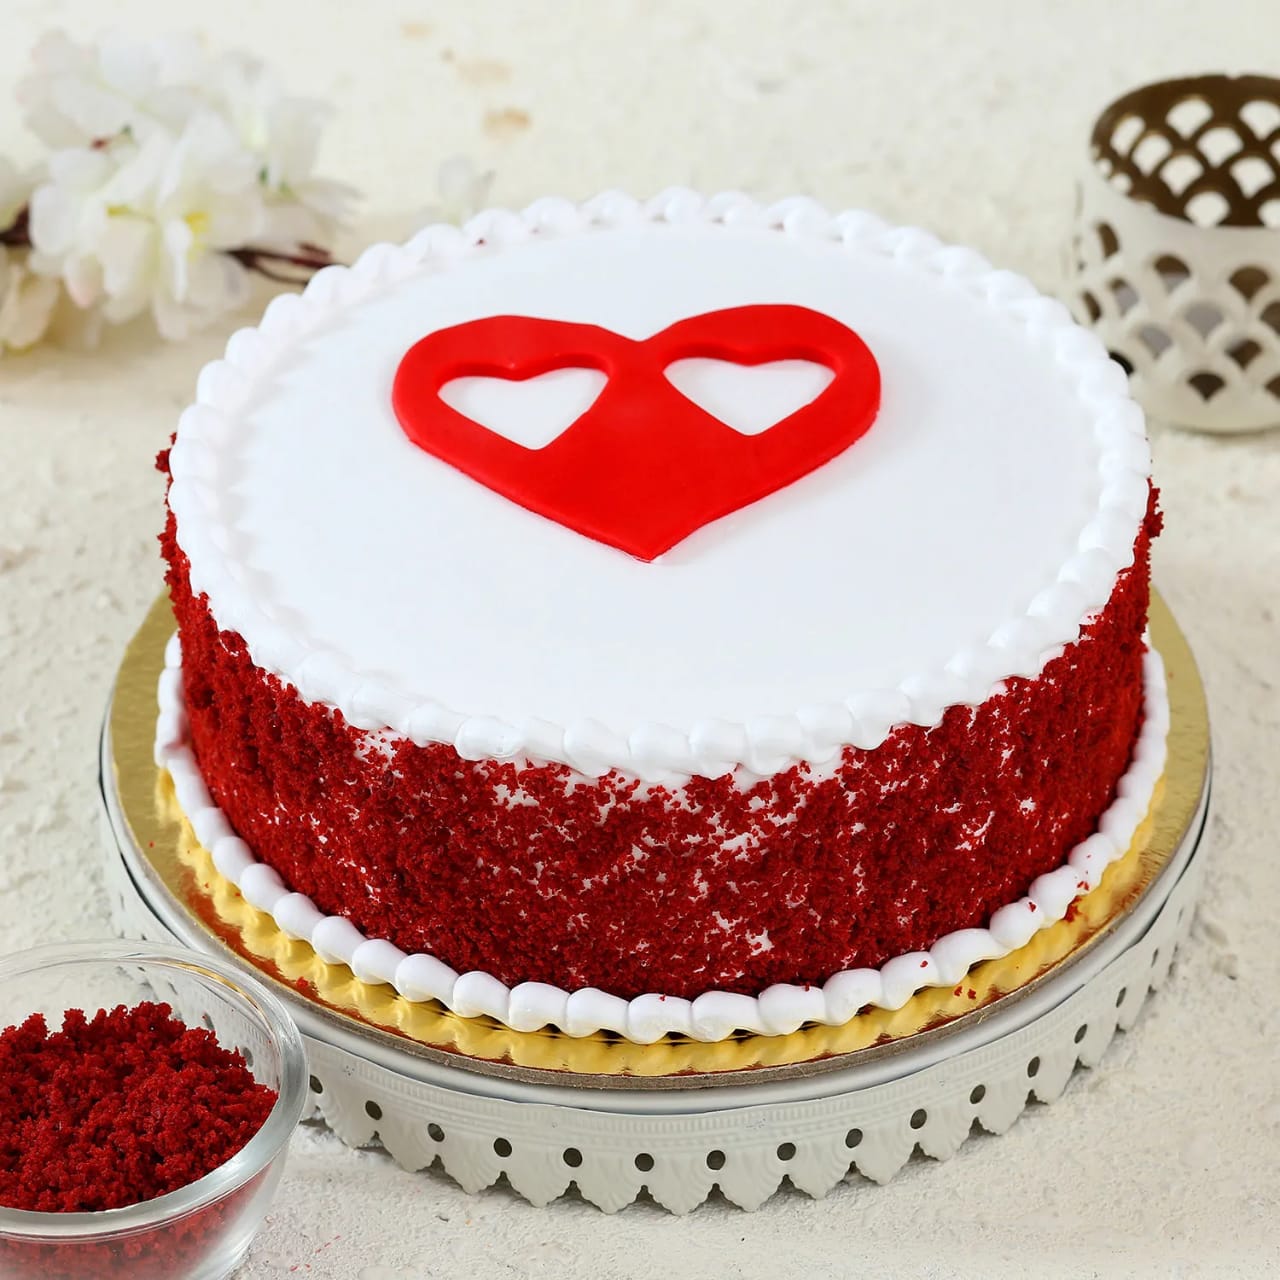 Hearts Love Red Velvet Cake